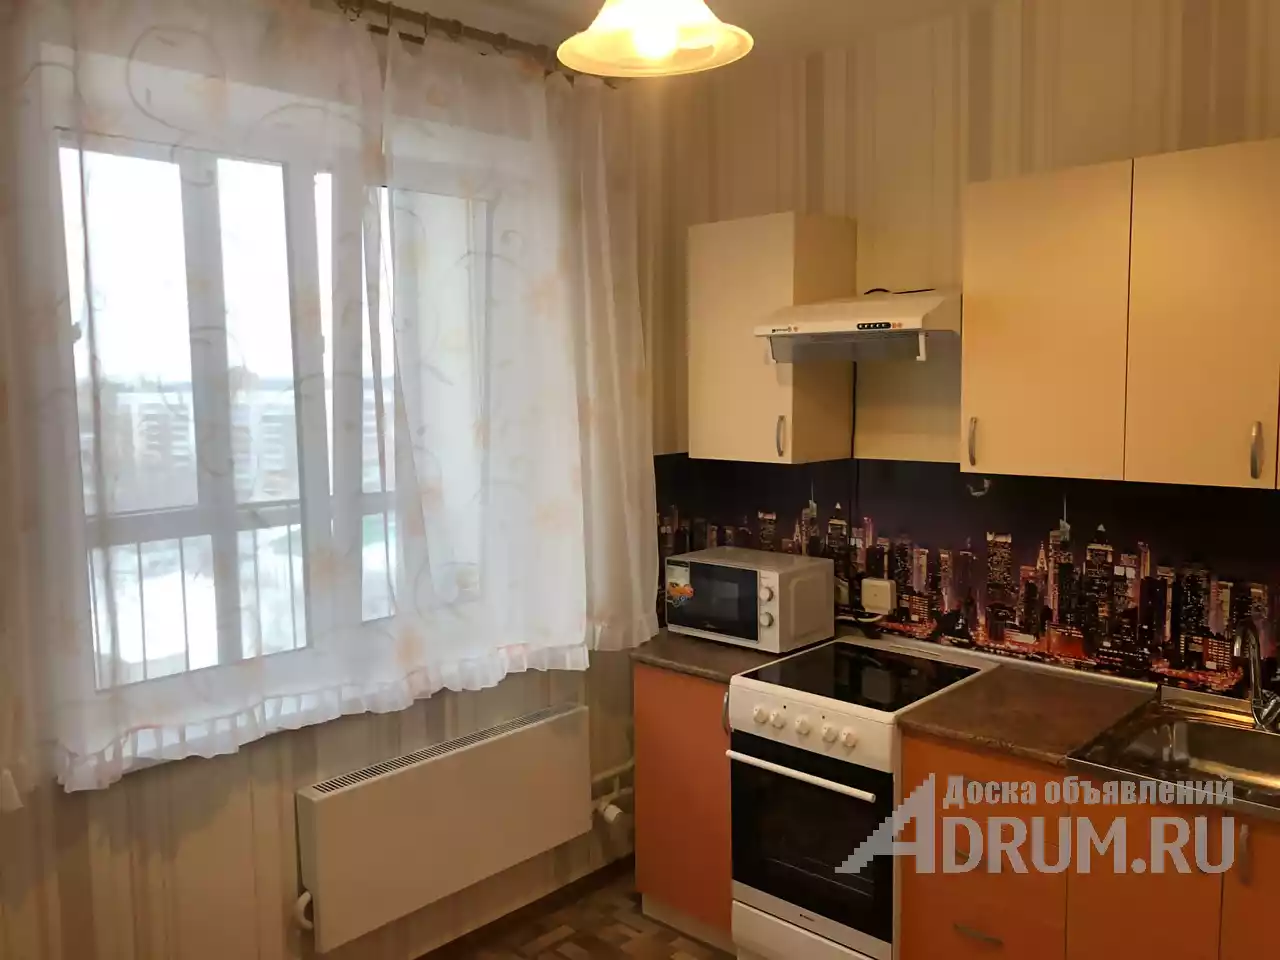 Продам 1-комнатную квартиру (вторичное) в Кировском районе в Томске, фото 5